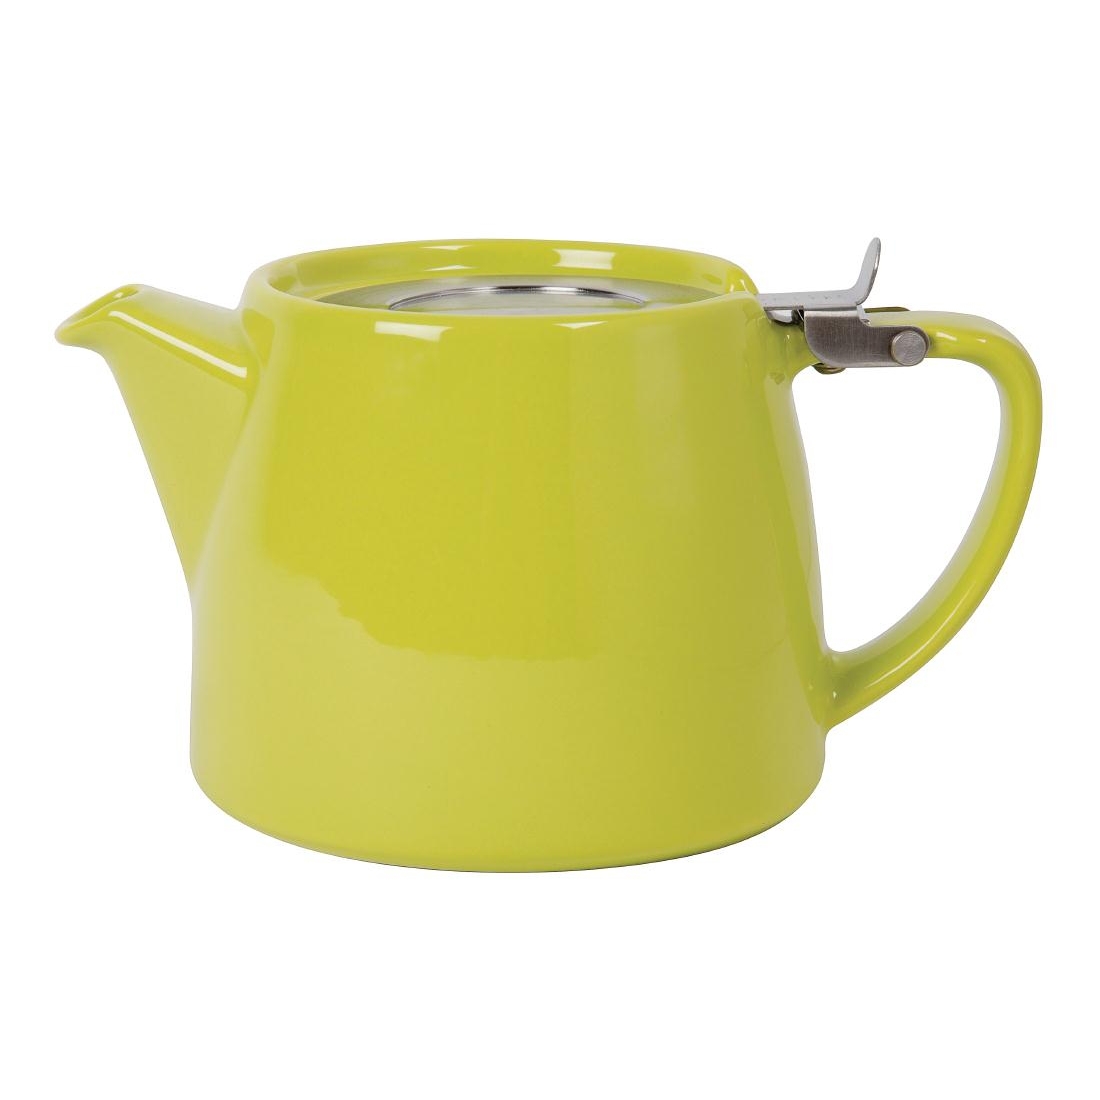 Forlife Stump Teapot Lime 510ml